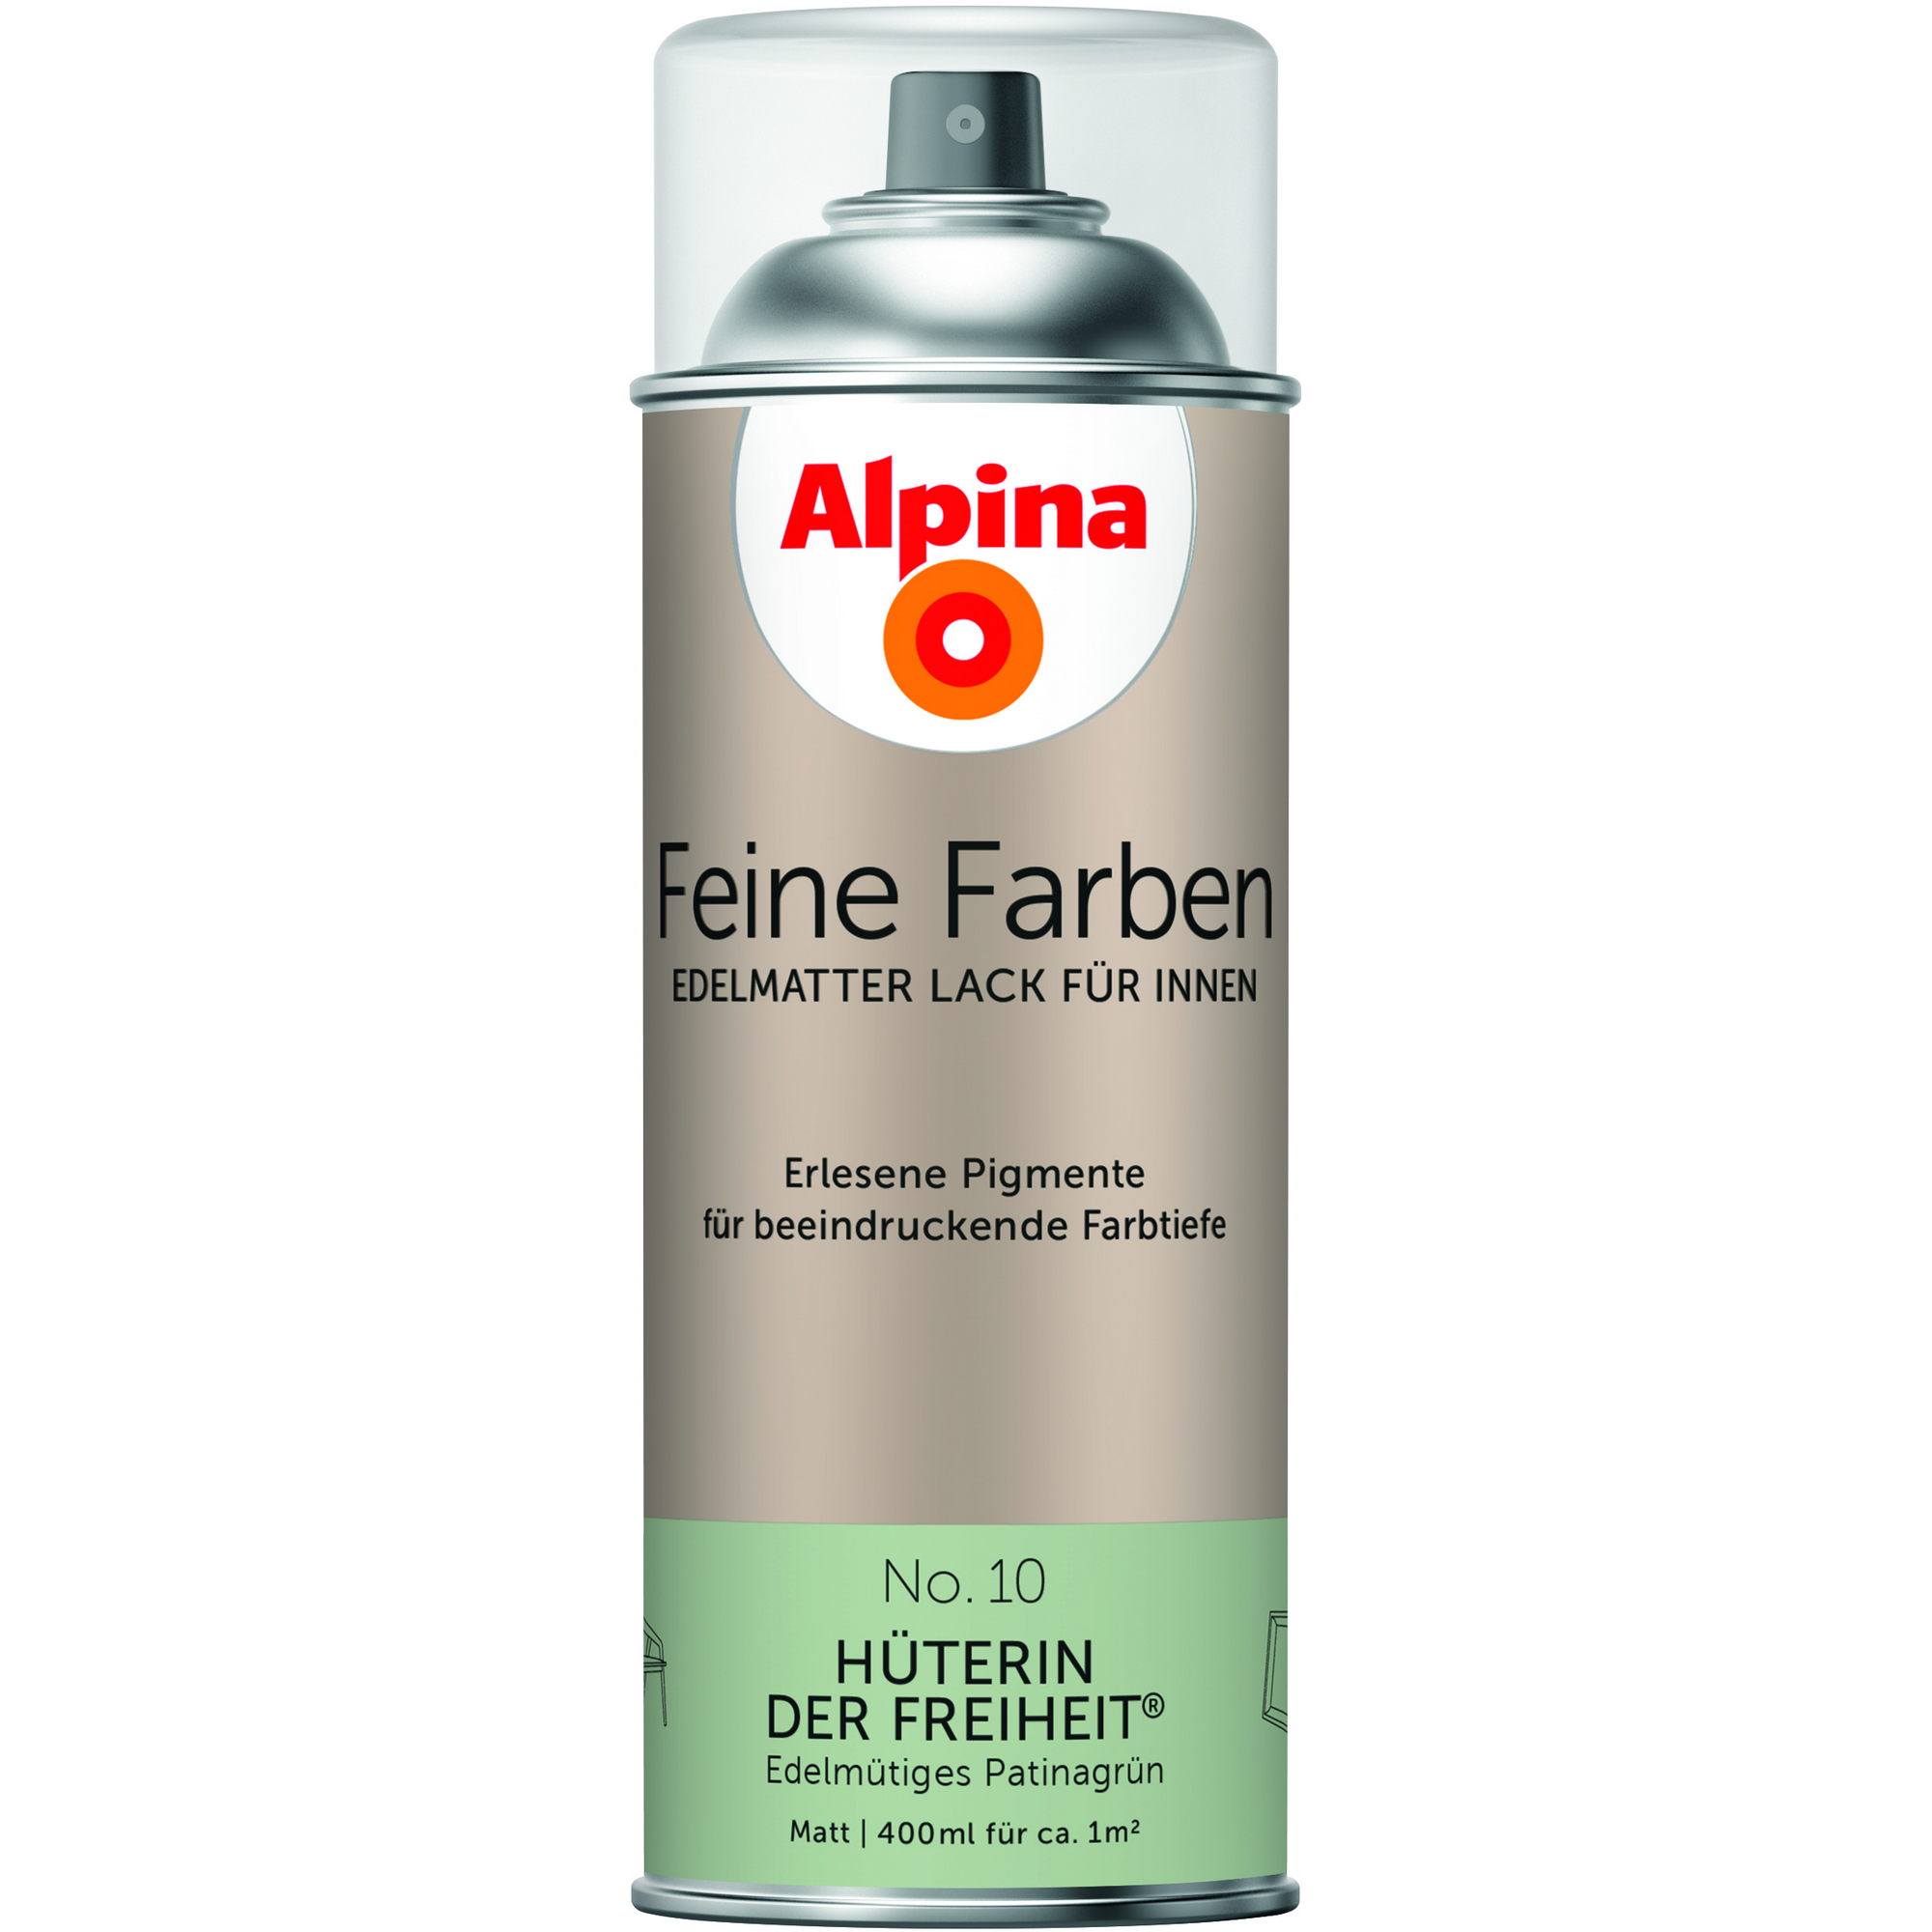 Feine Farben 'Hüterin der Freiheit' patinagrün matt 400 ml + product picture